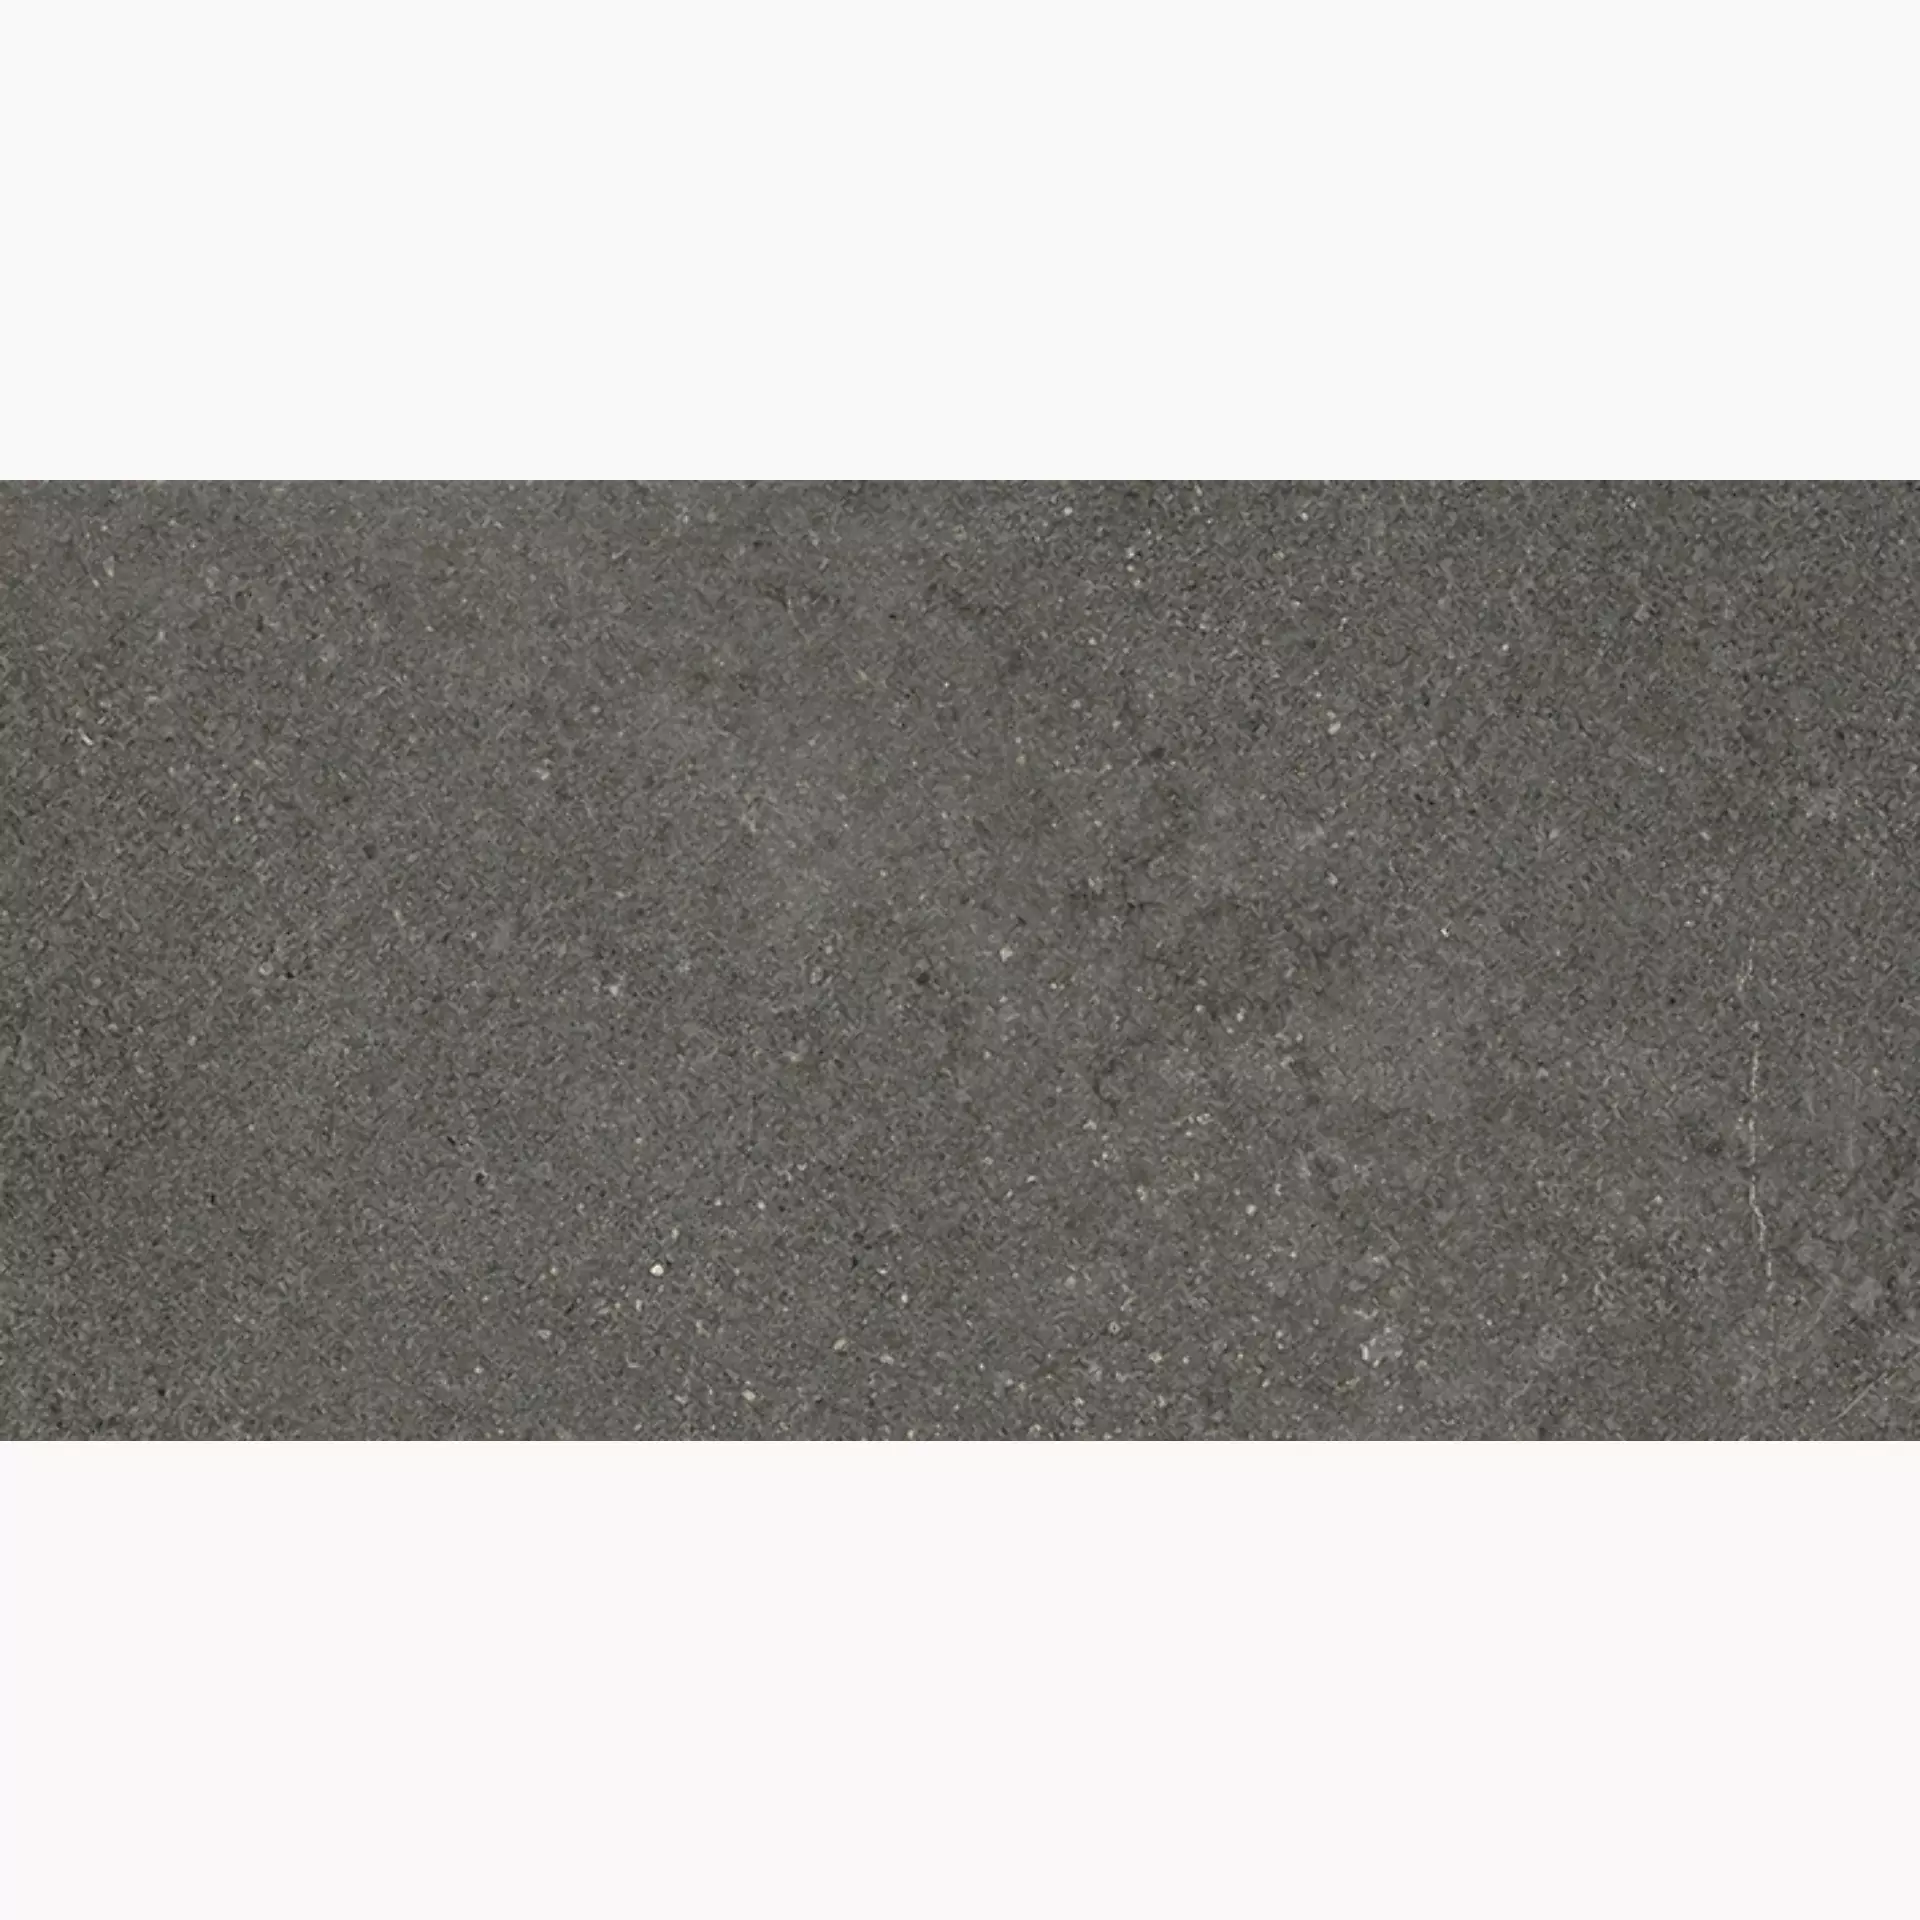 Wandfliese,Bodenfliese Villeroy & Boch Lucca Rock Matt Rock 2870-LS90 matt 30x60cm rektifiziert 9mm